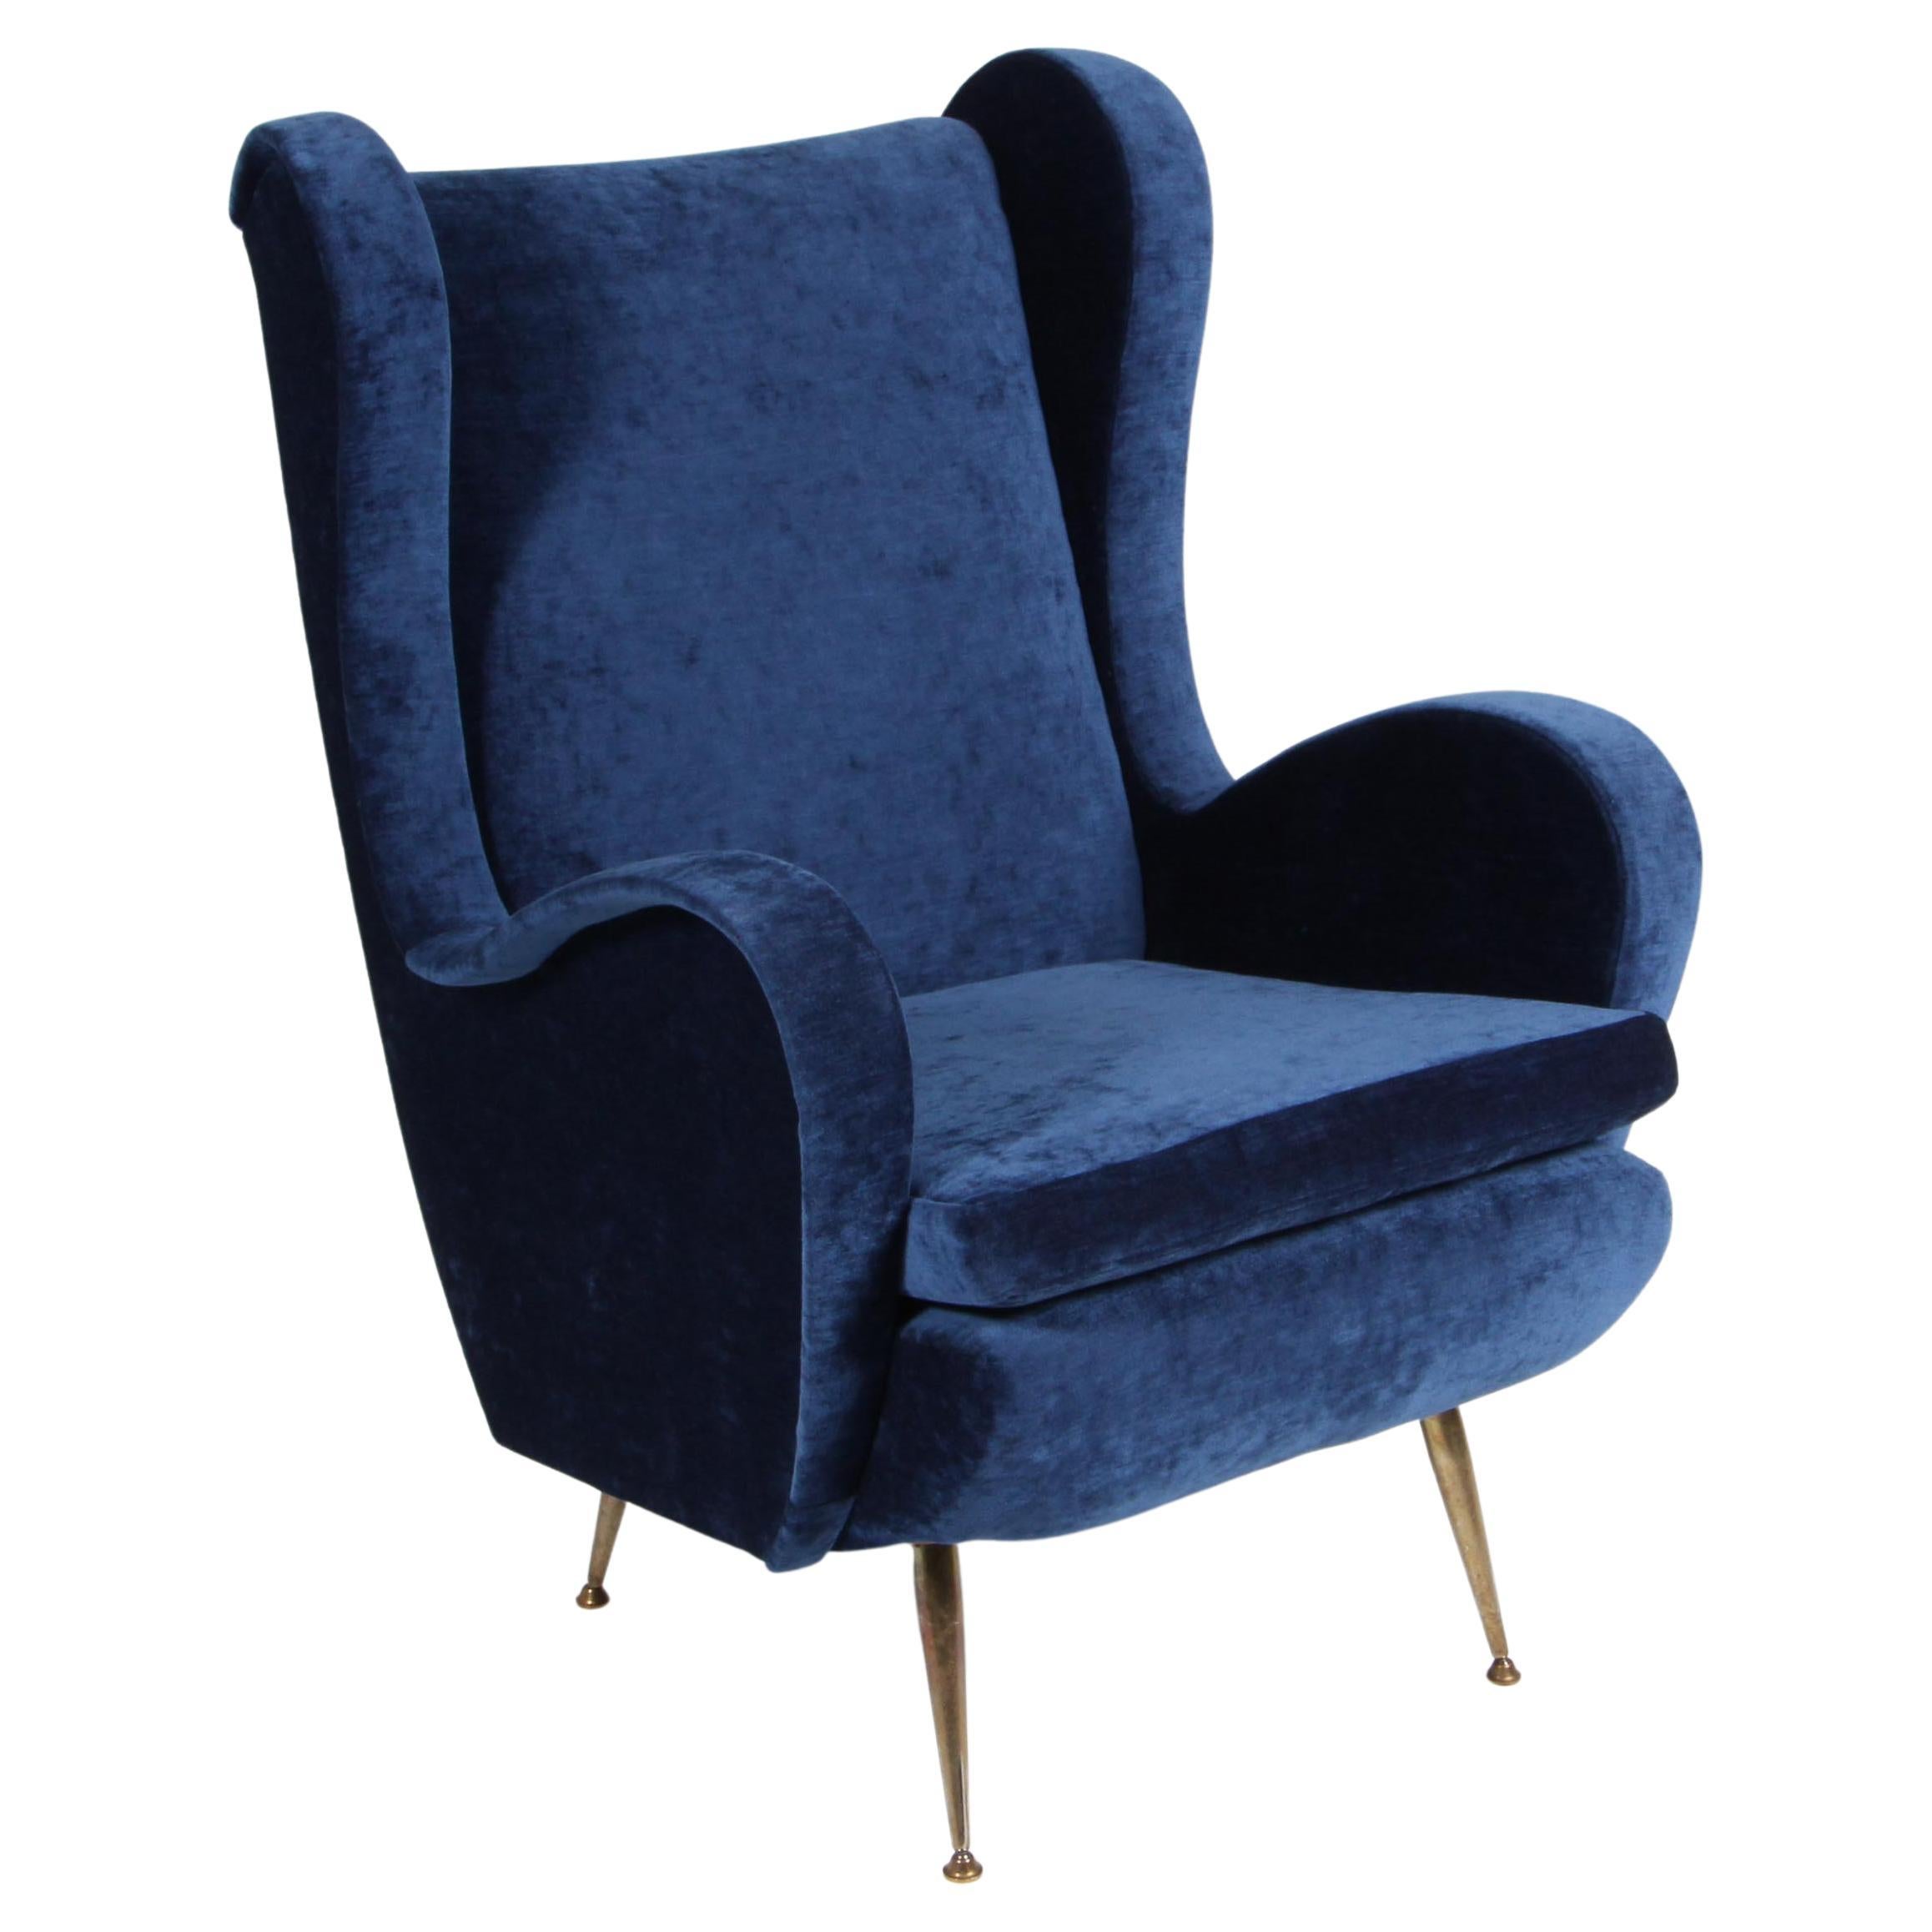 Gigi Radice Mid-Century Modern Italian Armchair for Minotti, 1950s. Velvet For Sale